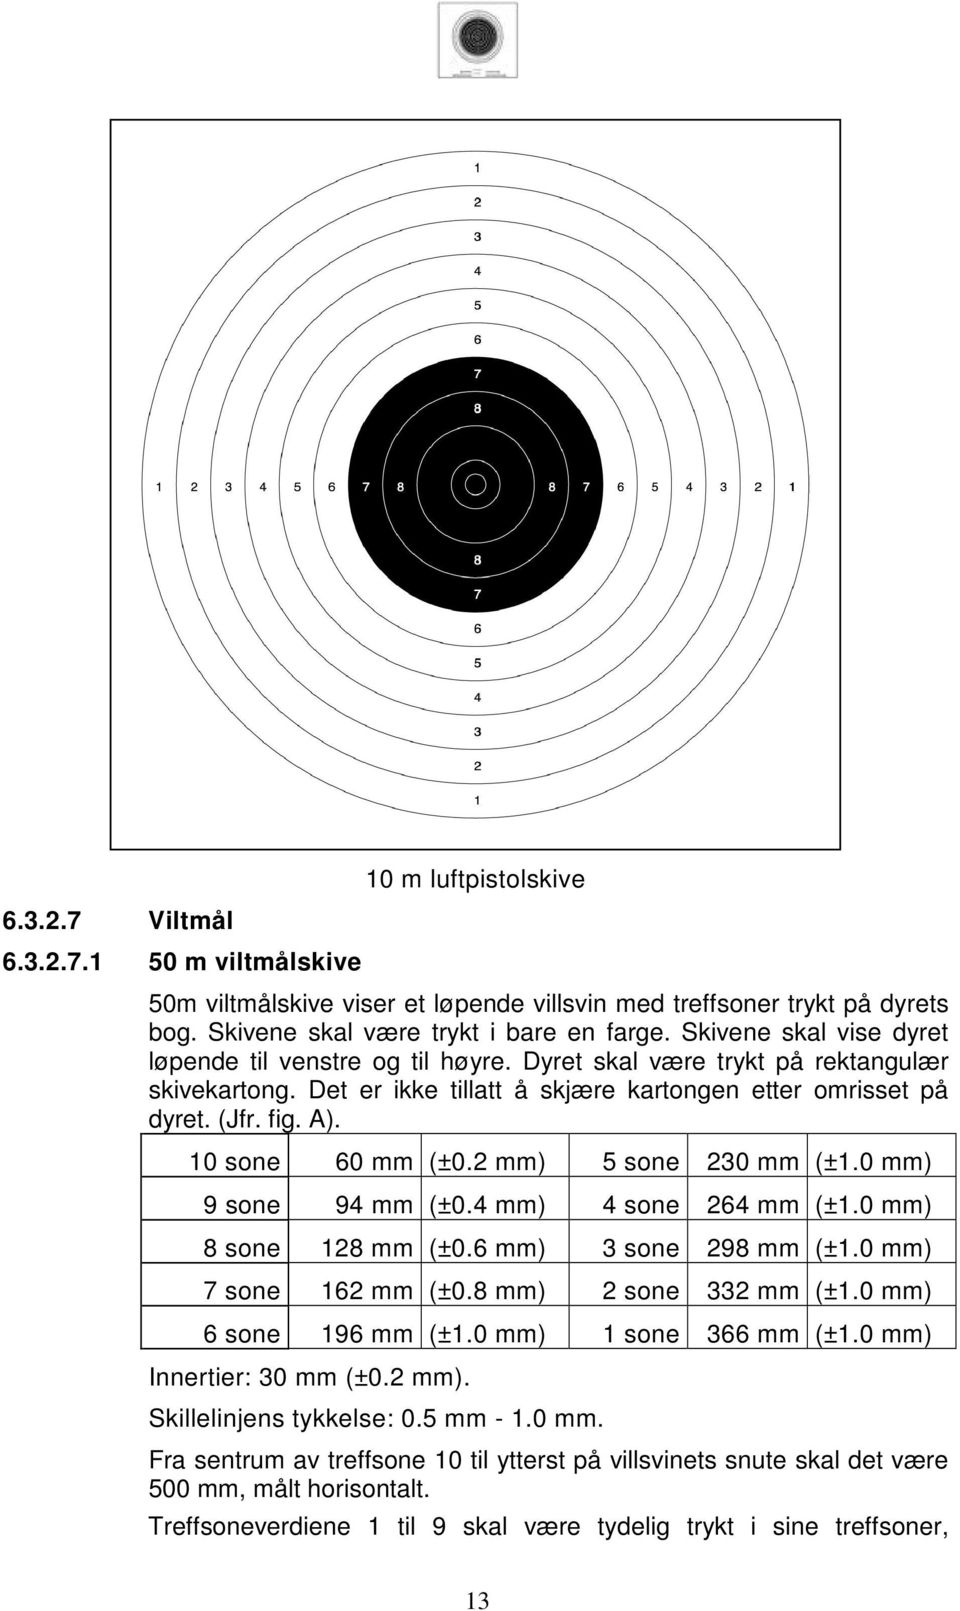 10 sone 60 mm (±0.2 mm) 5 sone 230 mm (±1.0 mm) 9 sone 94 mm (±0.4 mm) 4 sone 264 mm (±1.0 mm) 8 sone 128 mm (±0.6 mm) 3 sone 298 mm (±1.0 mm) 7 sone 162 mm (±0.8 mm) 2 sone 332 mm (±1.